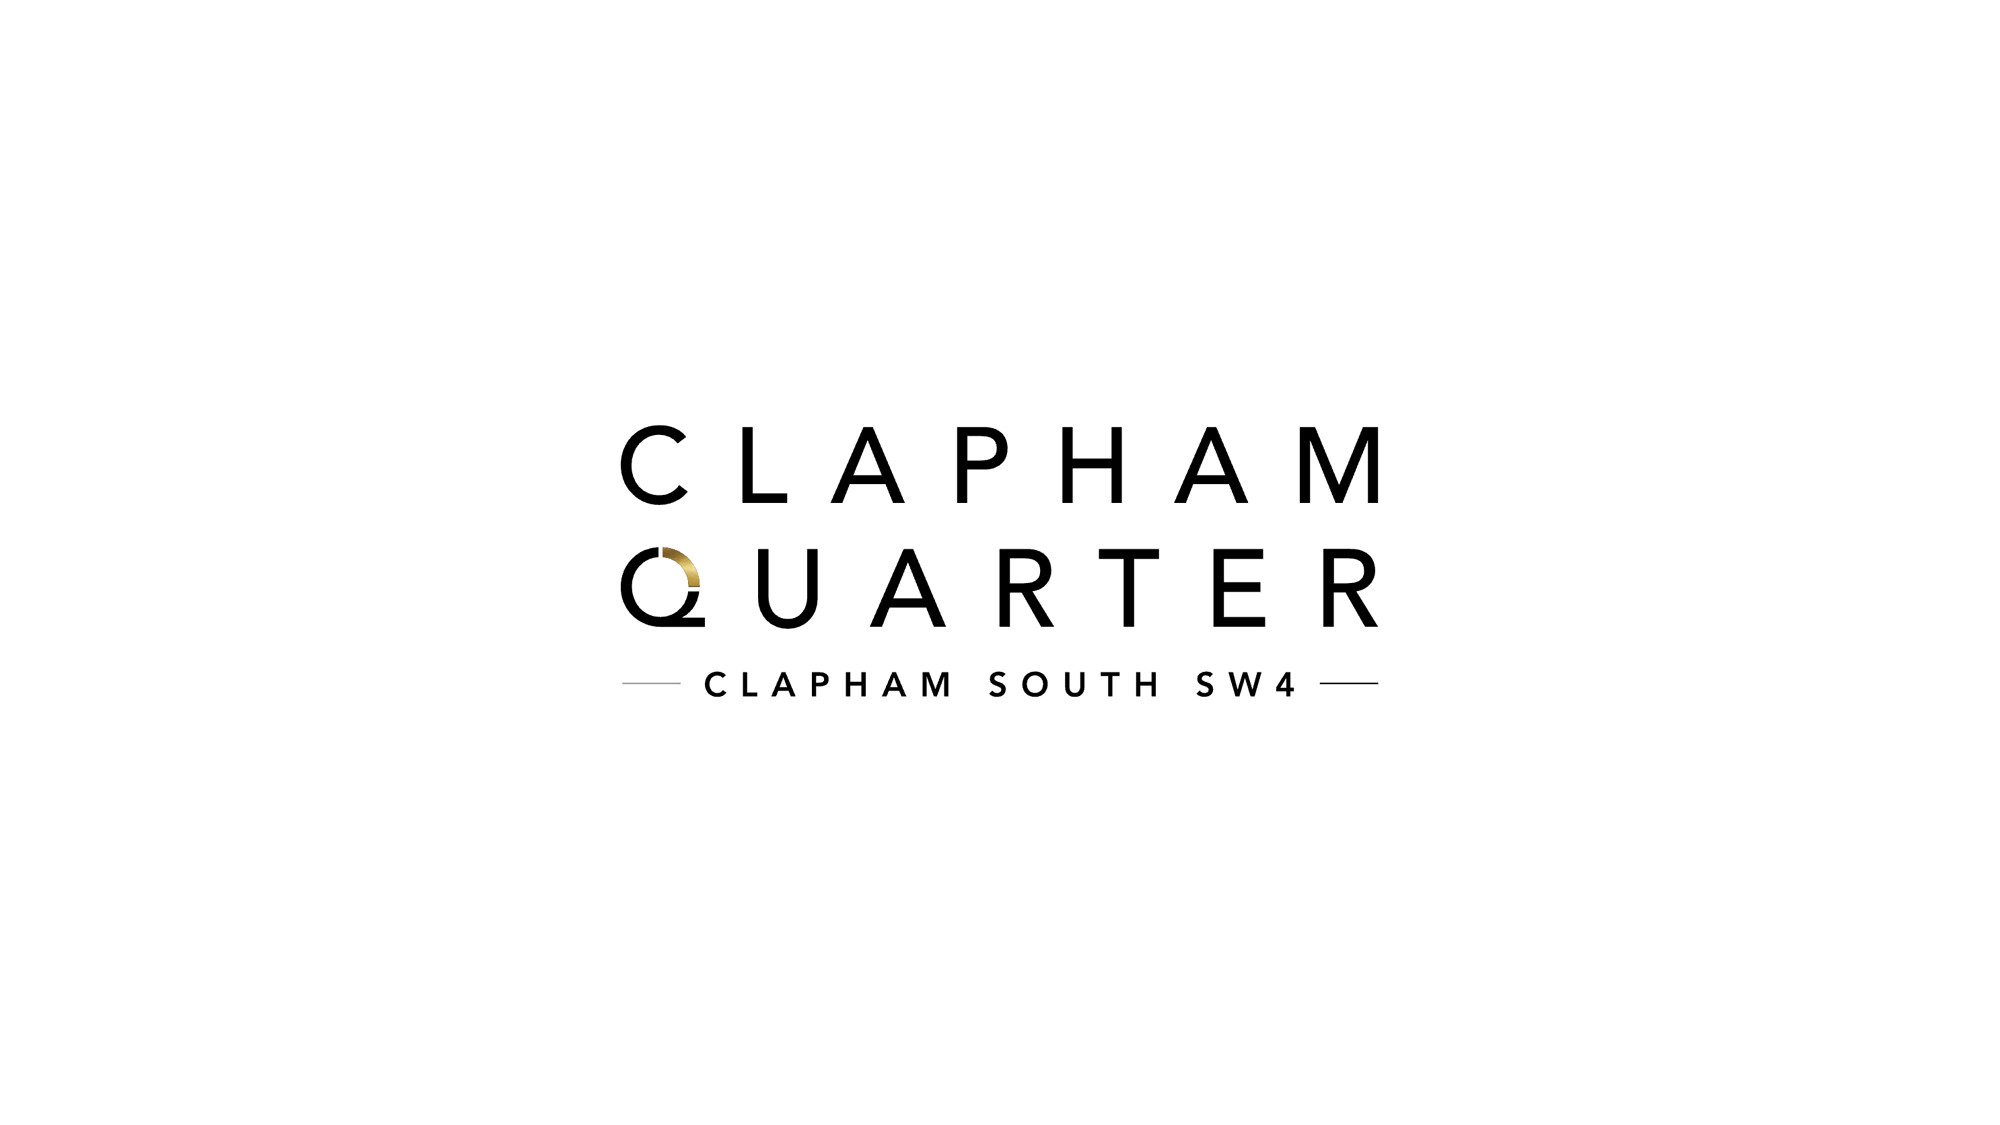 Clapham Quarter development logo cover